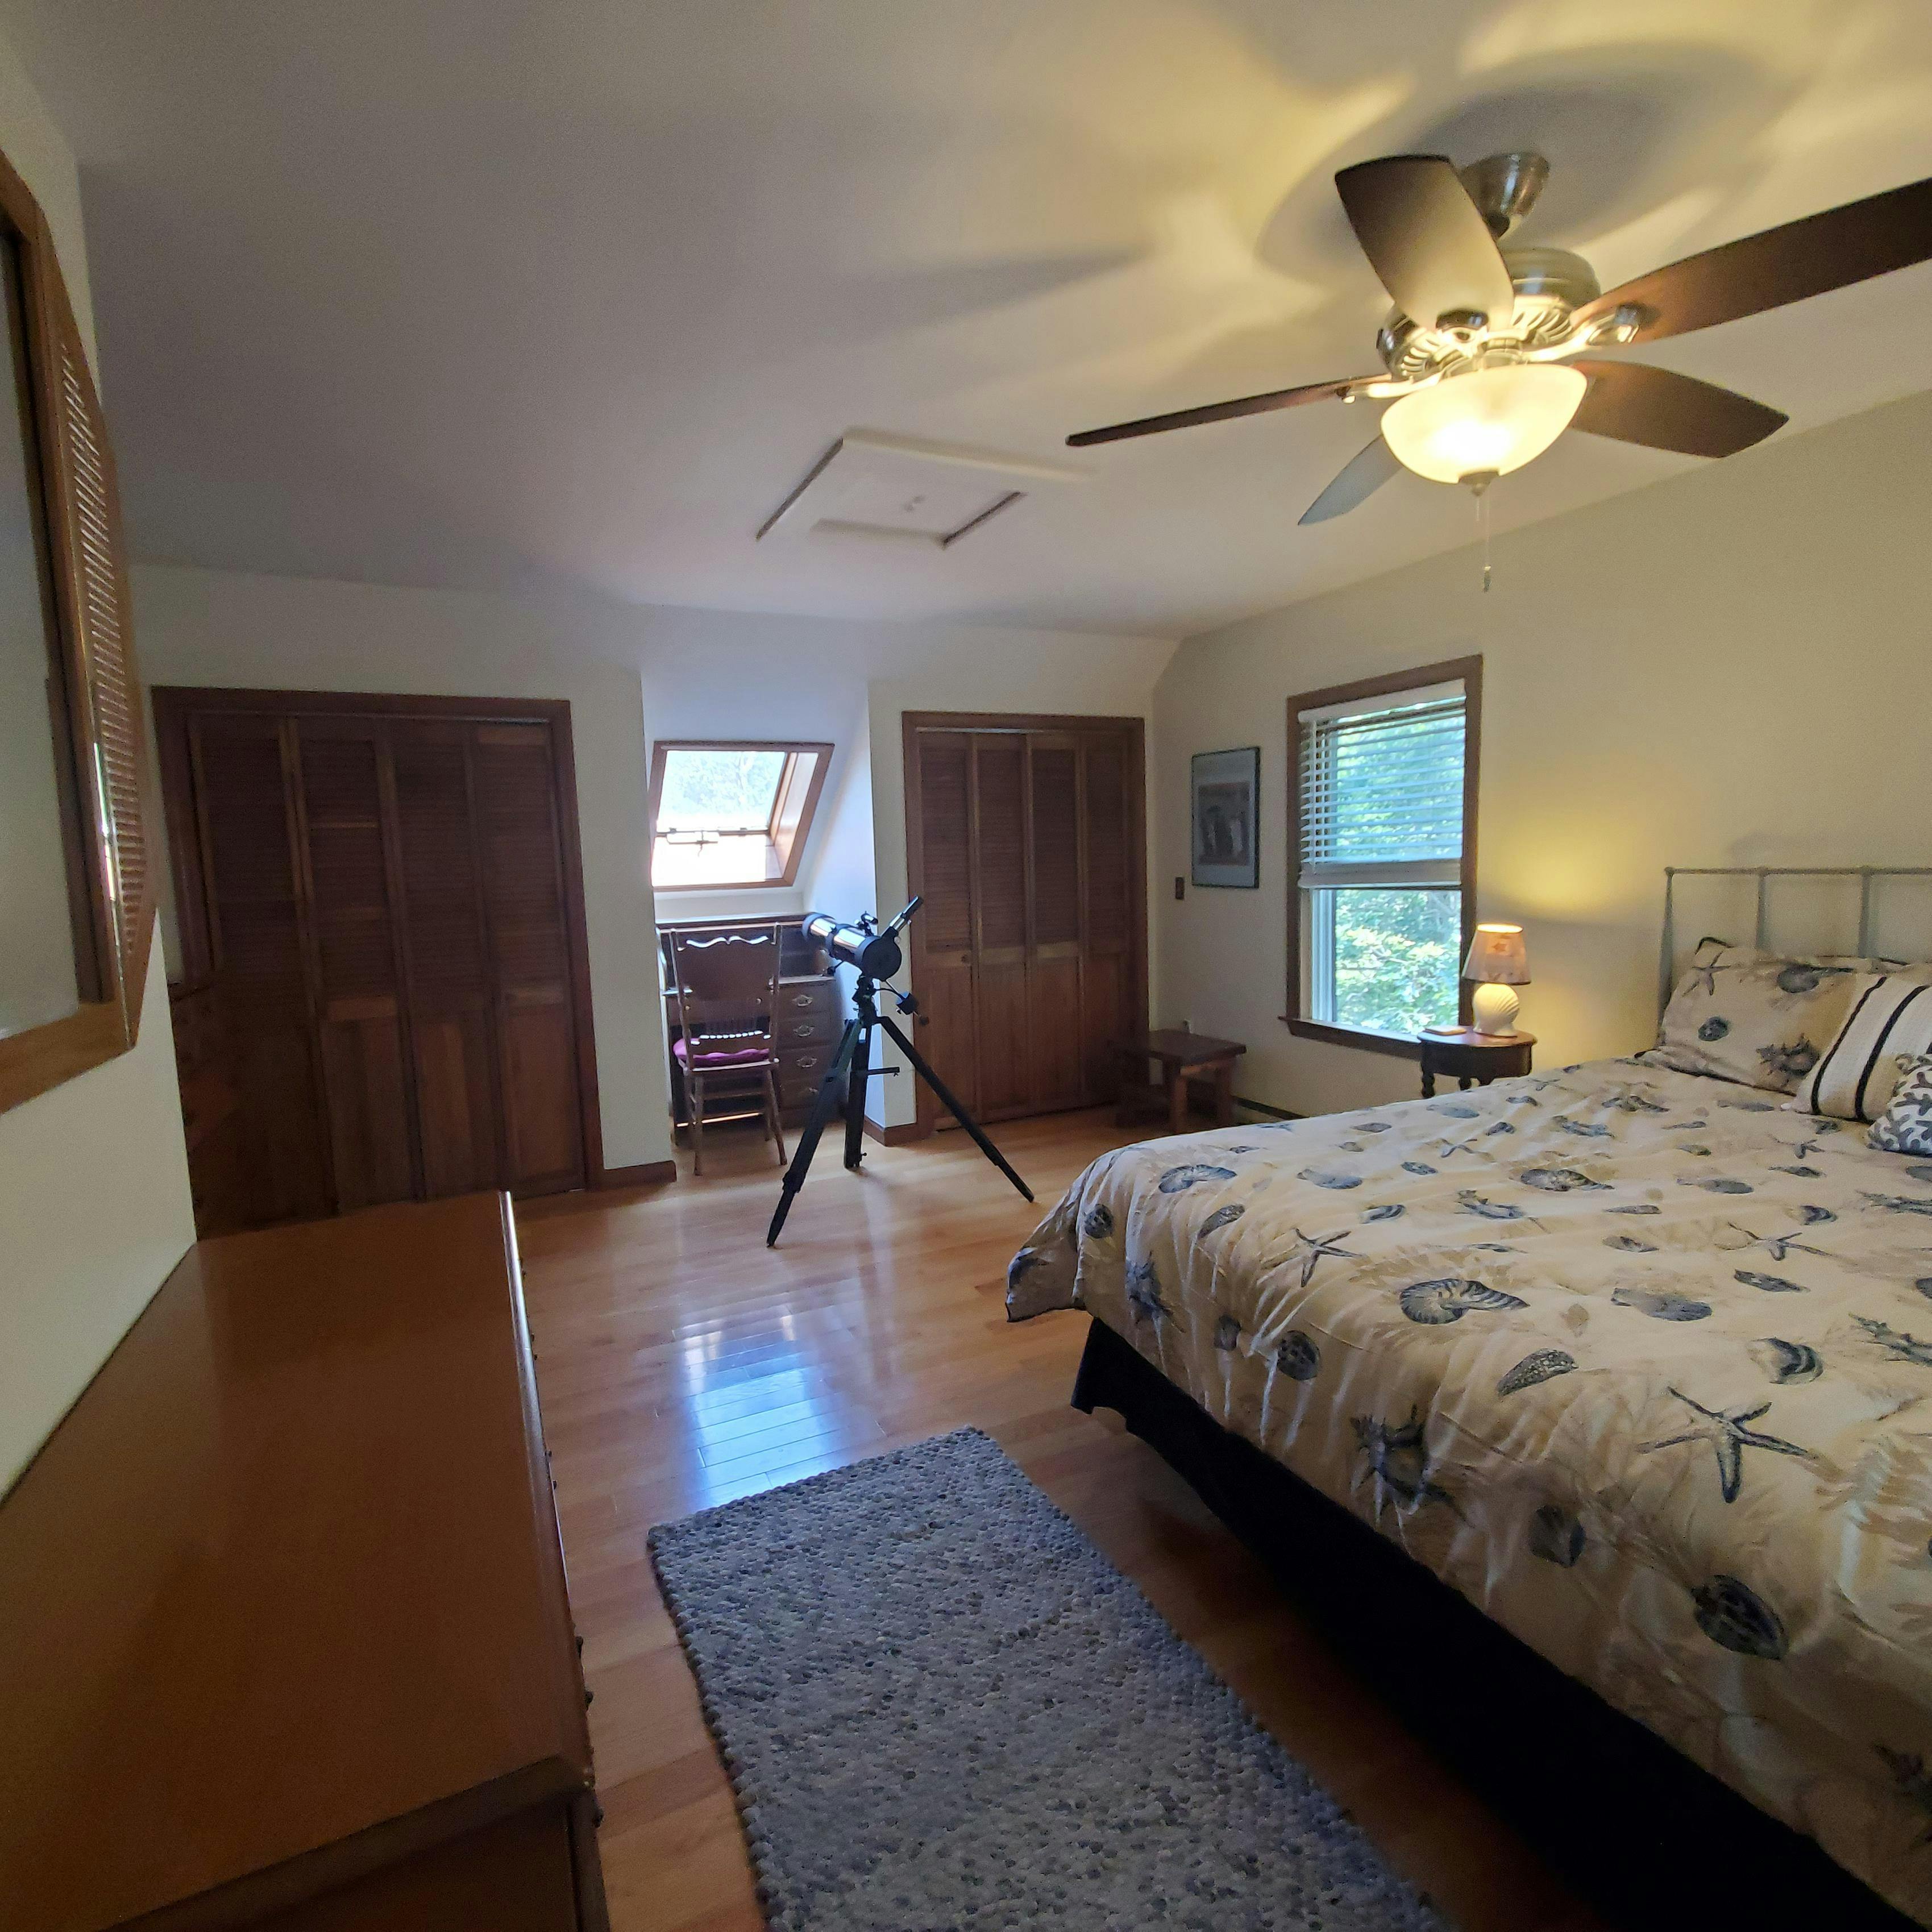 Image 3 - 4 Bedroom Rental in Oak Bluffs, East Chop - Sleeps 8